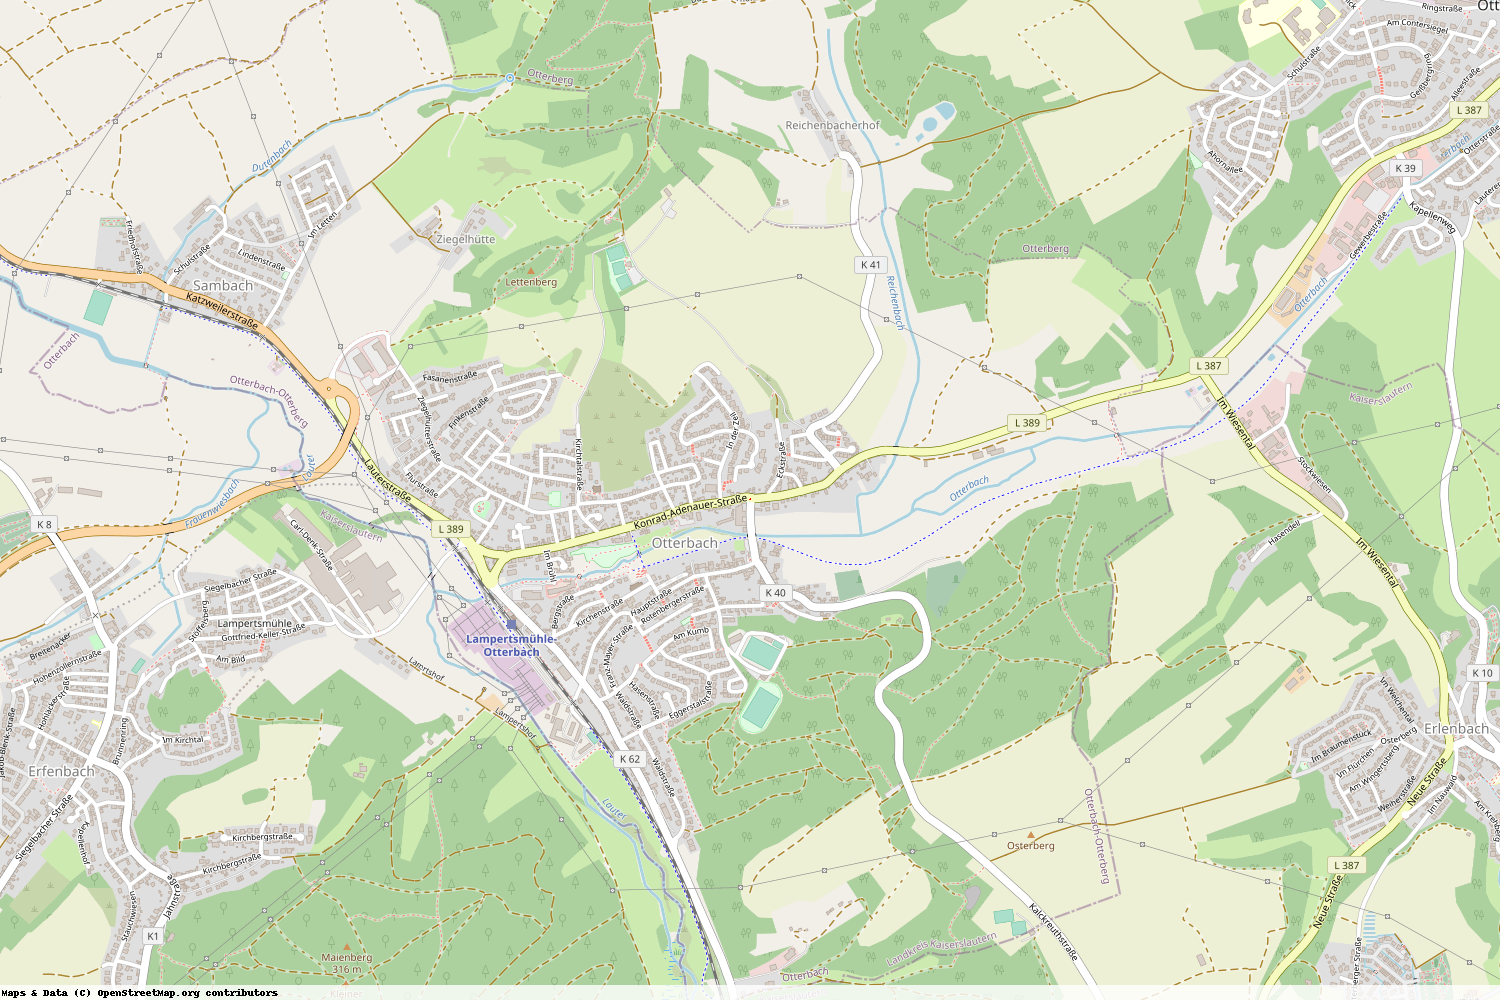 Ist gerade Stromausfall in Rheinland-Pfalz - Kaiserslautern - Otterbach?